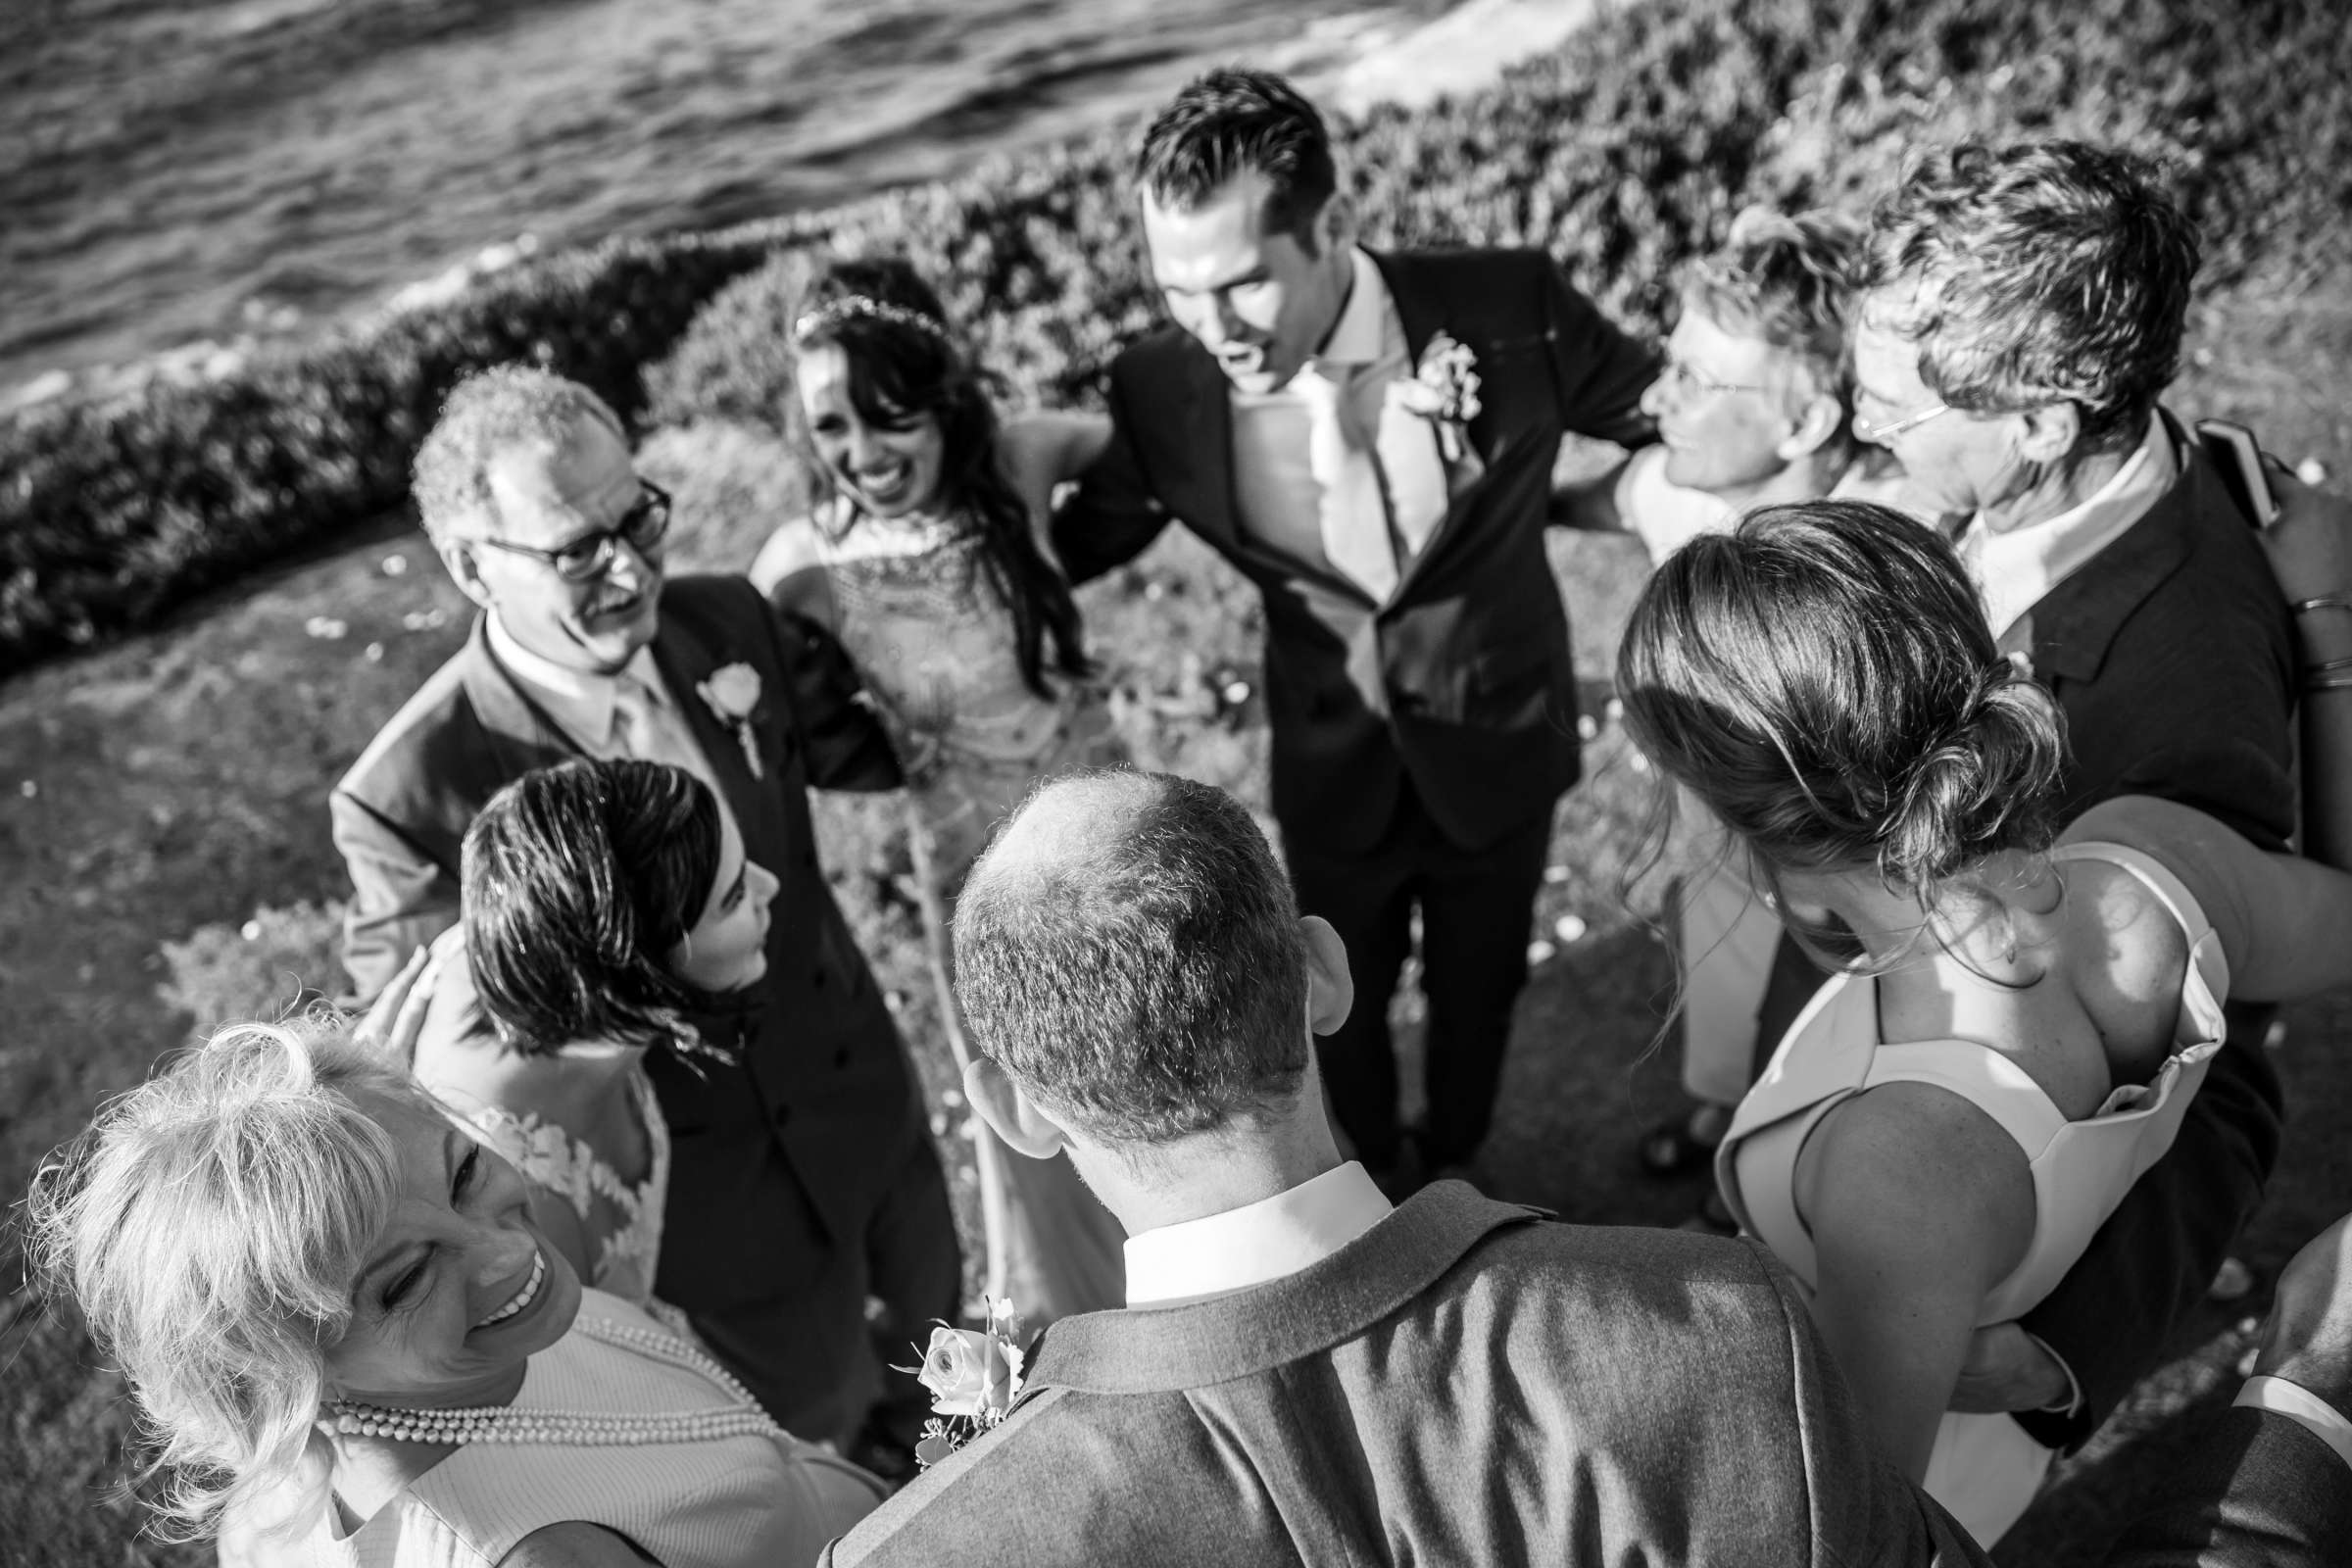 Cuvier Club Wedding, Sierra and Tom Wedding Photo #292504 by True Photography